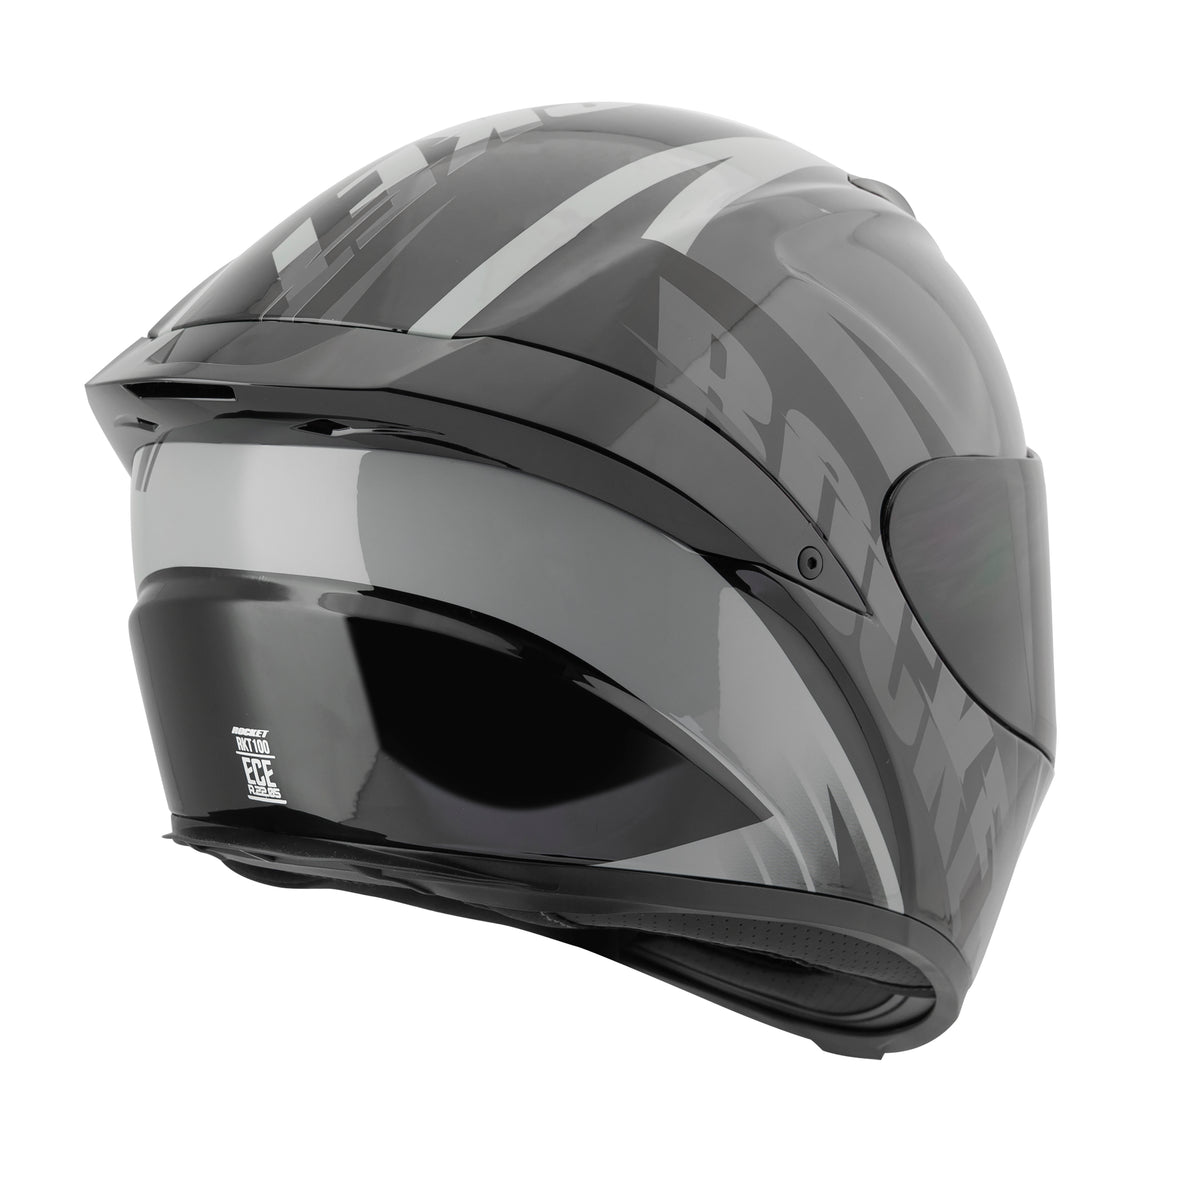 Joe Rocket Canada® RKT-100 Series Atomic™ 3.0 Motorcycle Helmet